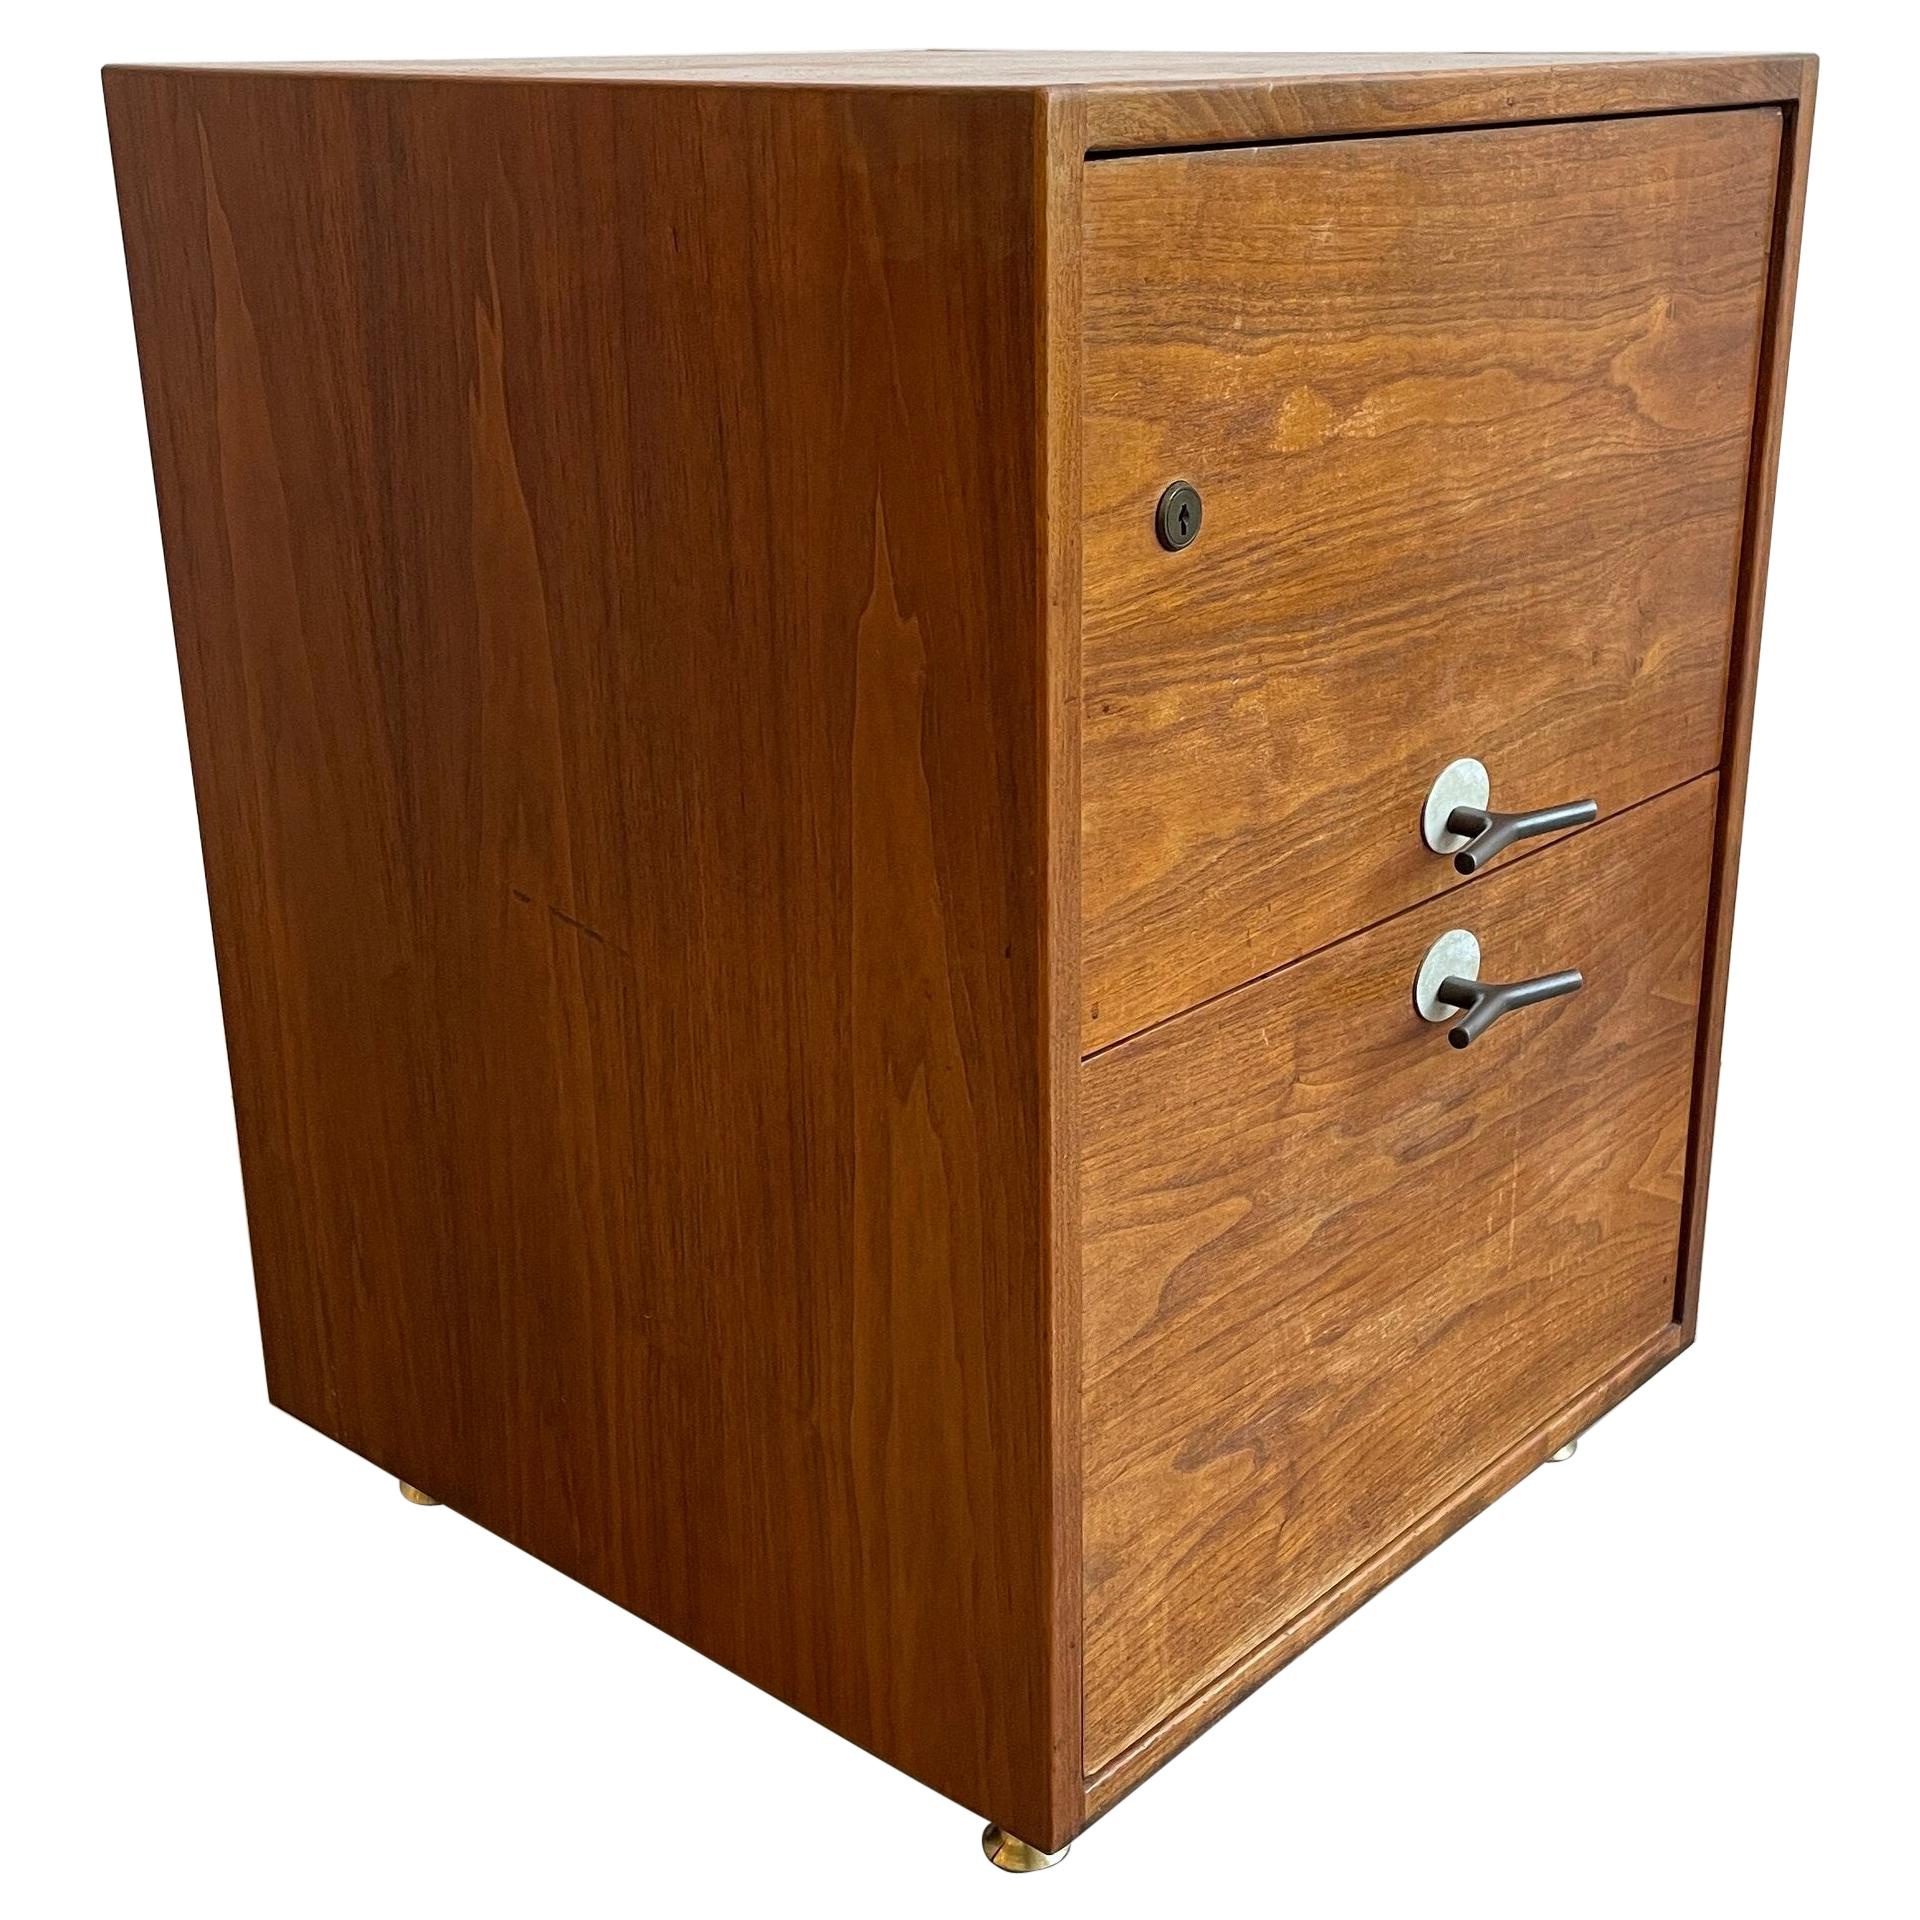 Jens Risom "Y Pulls" Two Drawer Dresser in Walnut Wood with Brass by Jens Risom